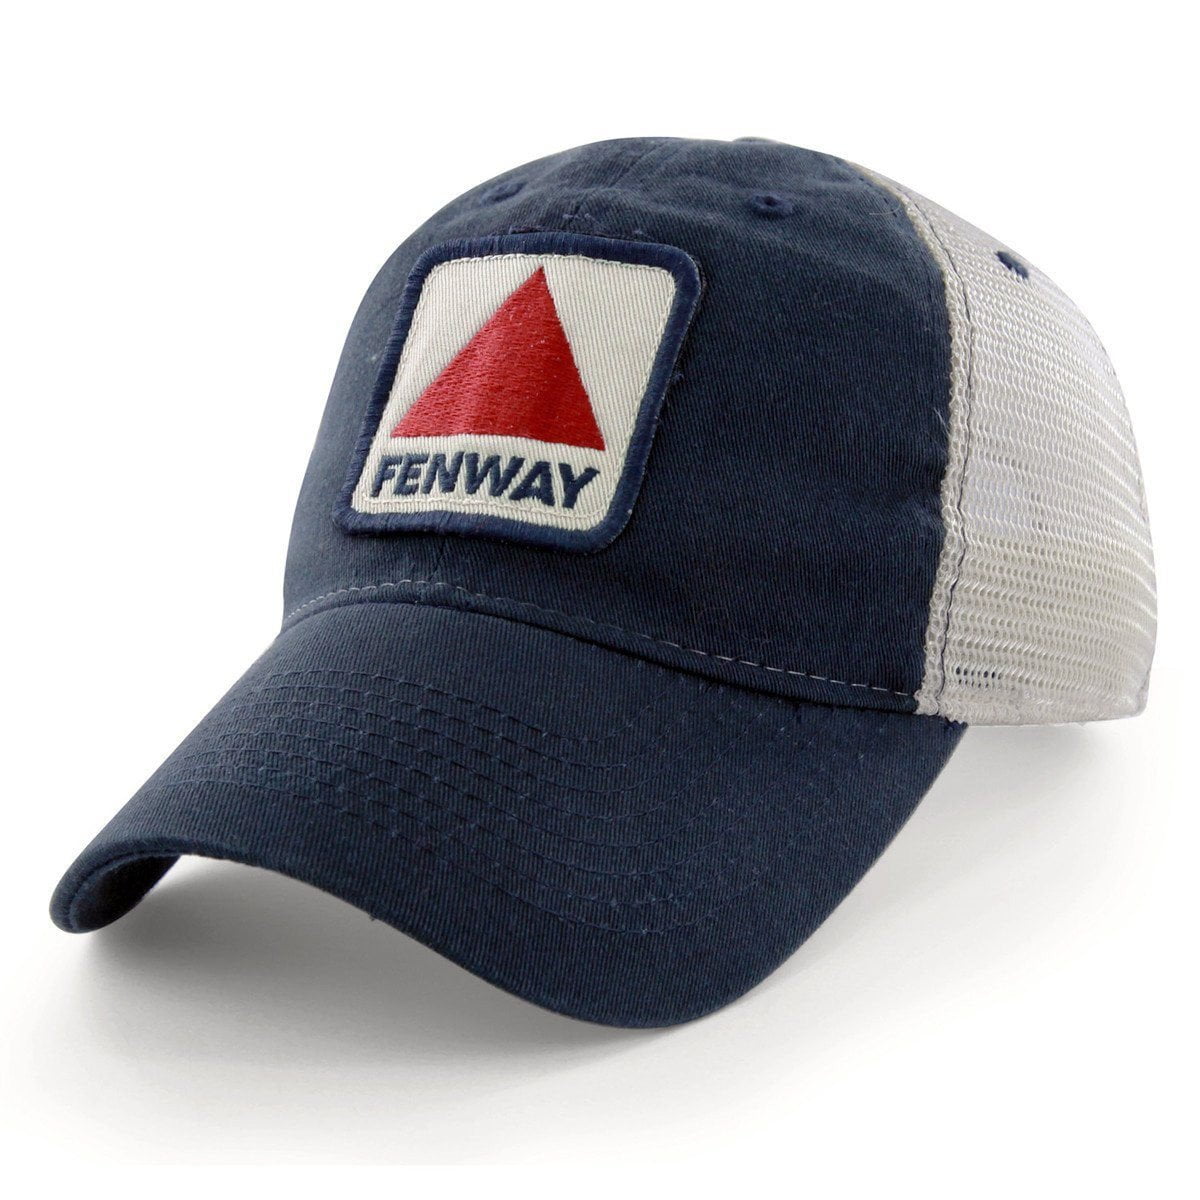 Fenway Patch "Townie" Mesh Trucker Navy Hat - Chowdaheadz